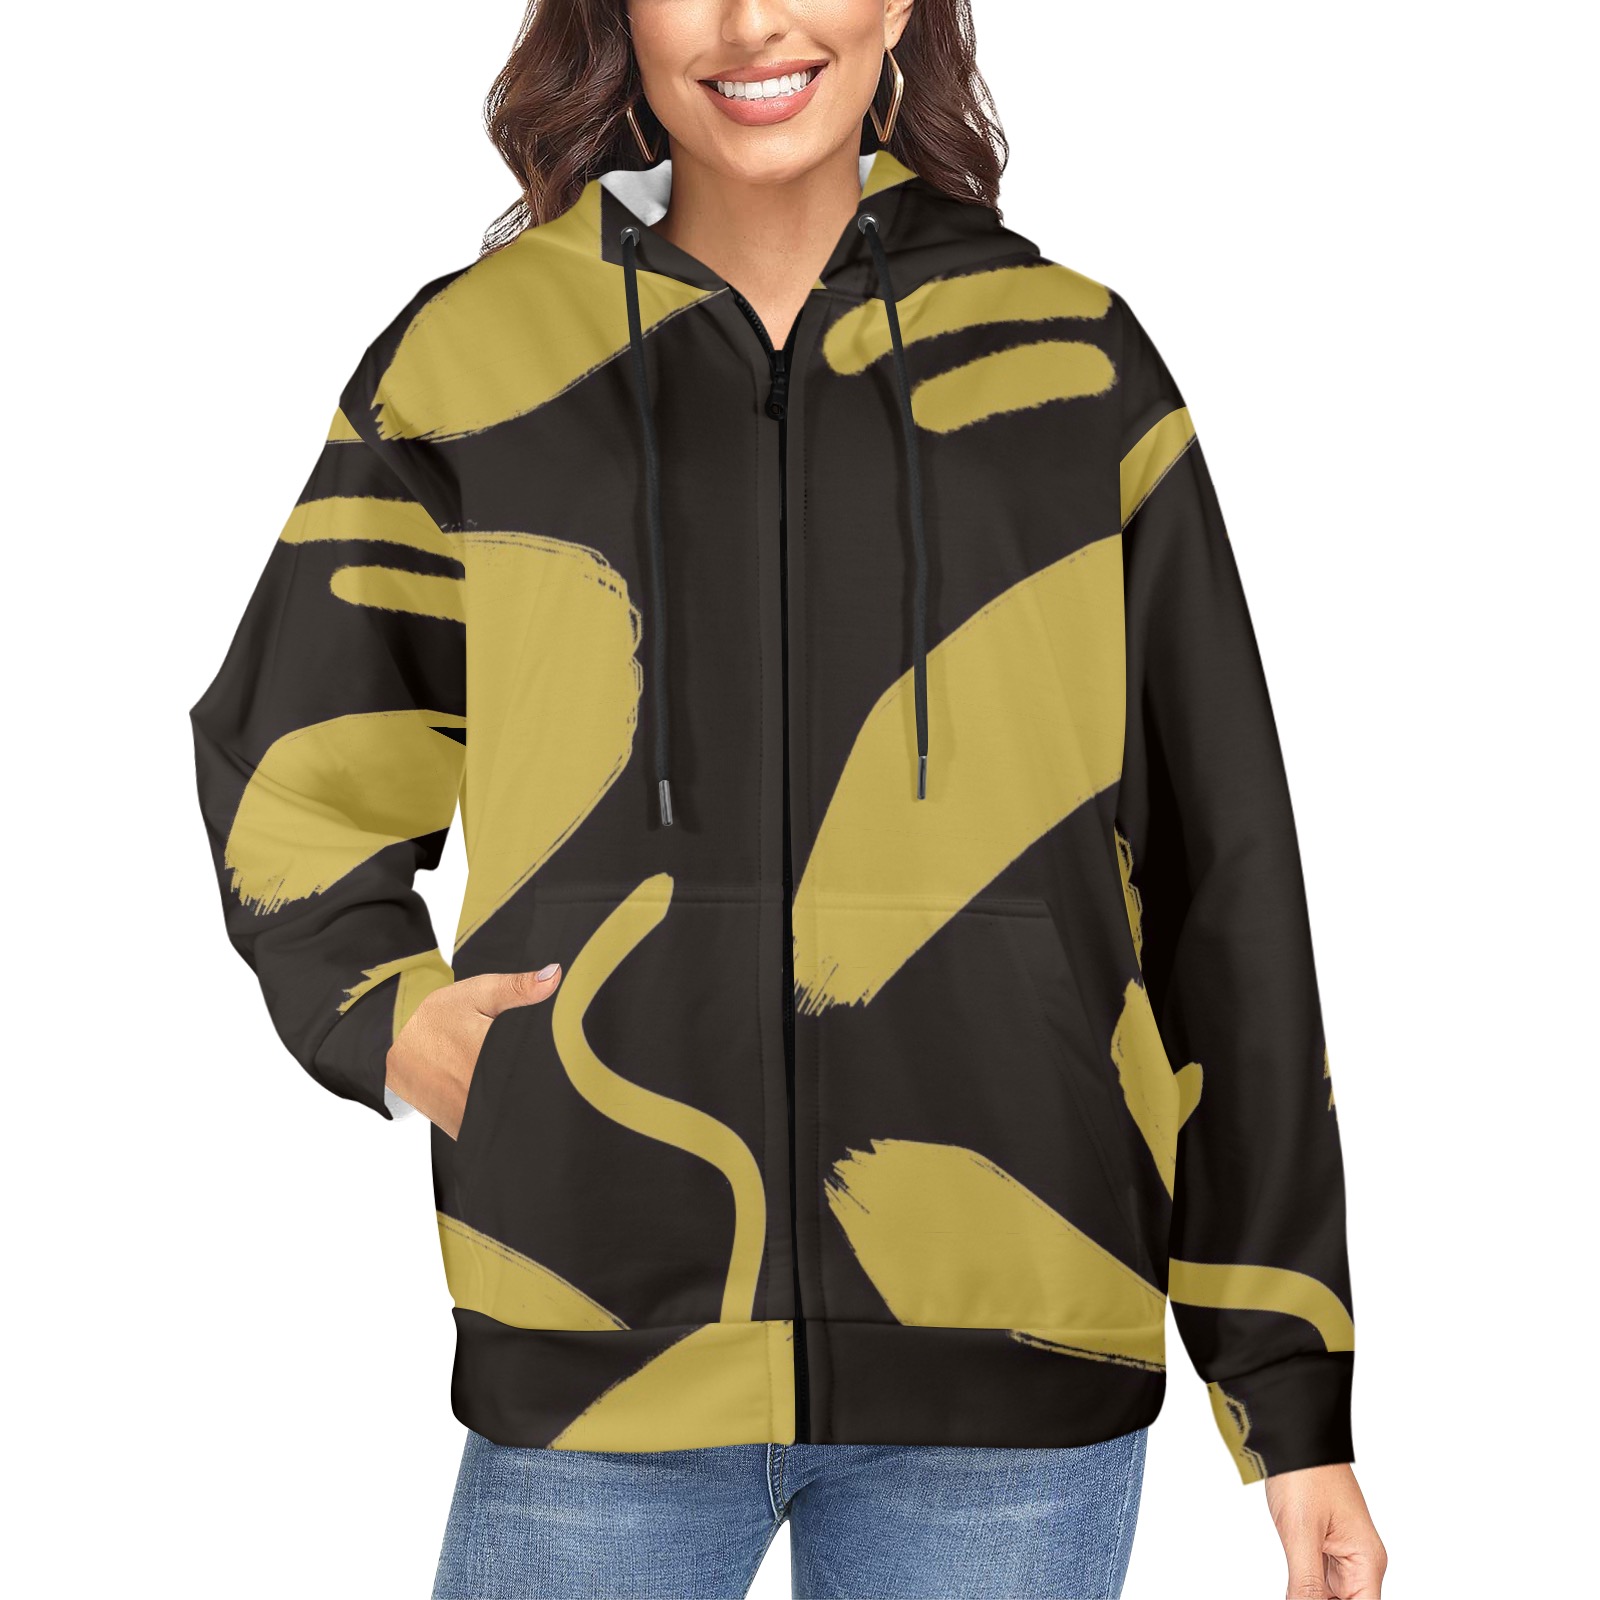 Tribal Black and Gold Women's Fleece Full-Zip Hoodie (Model H60)